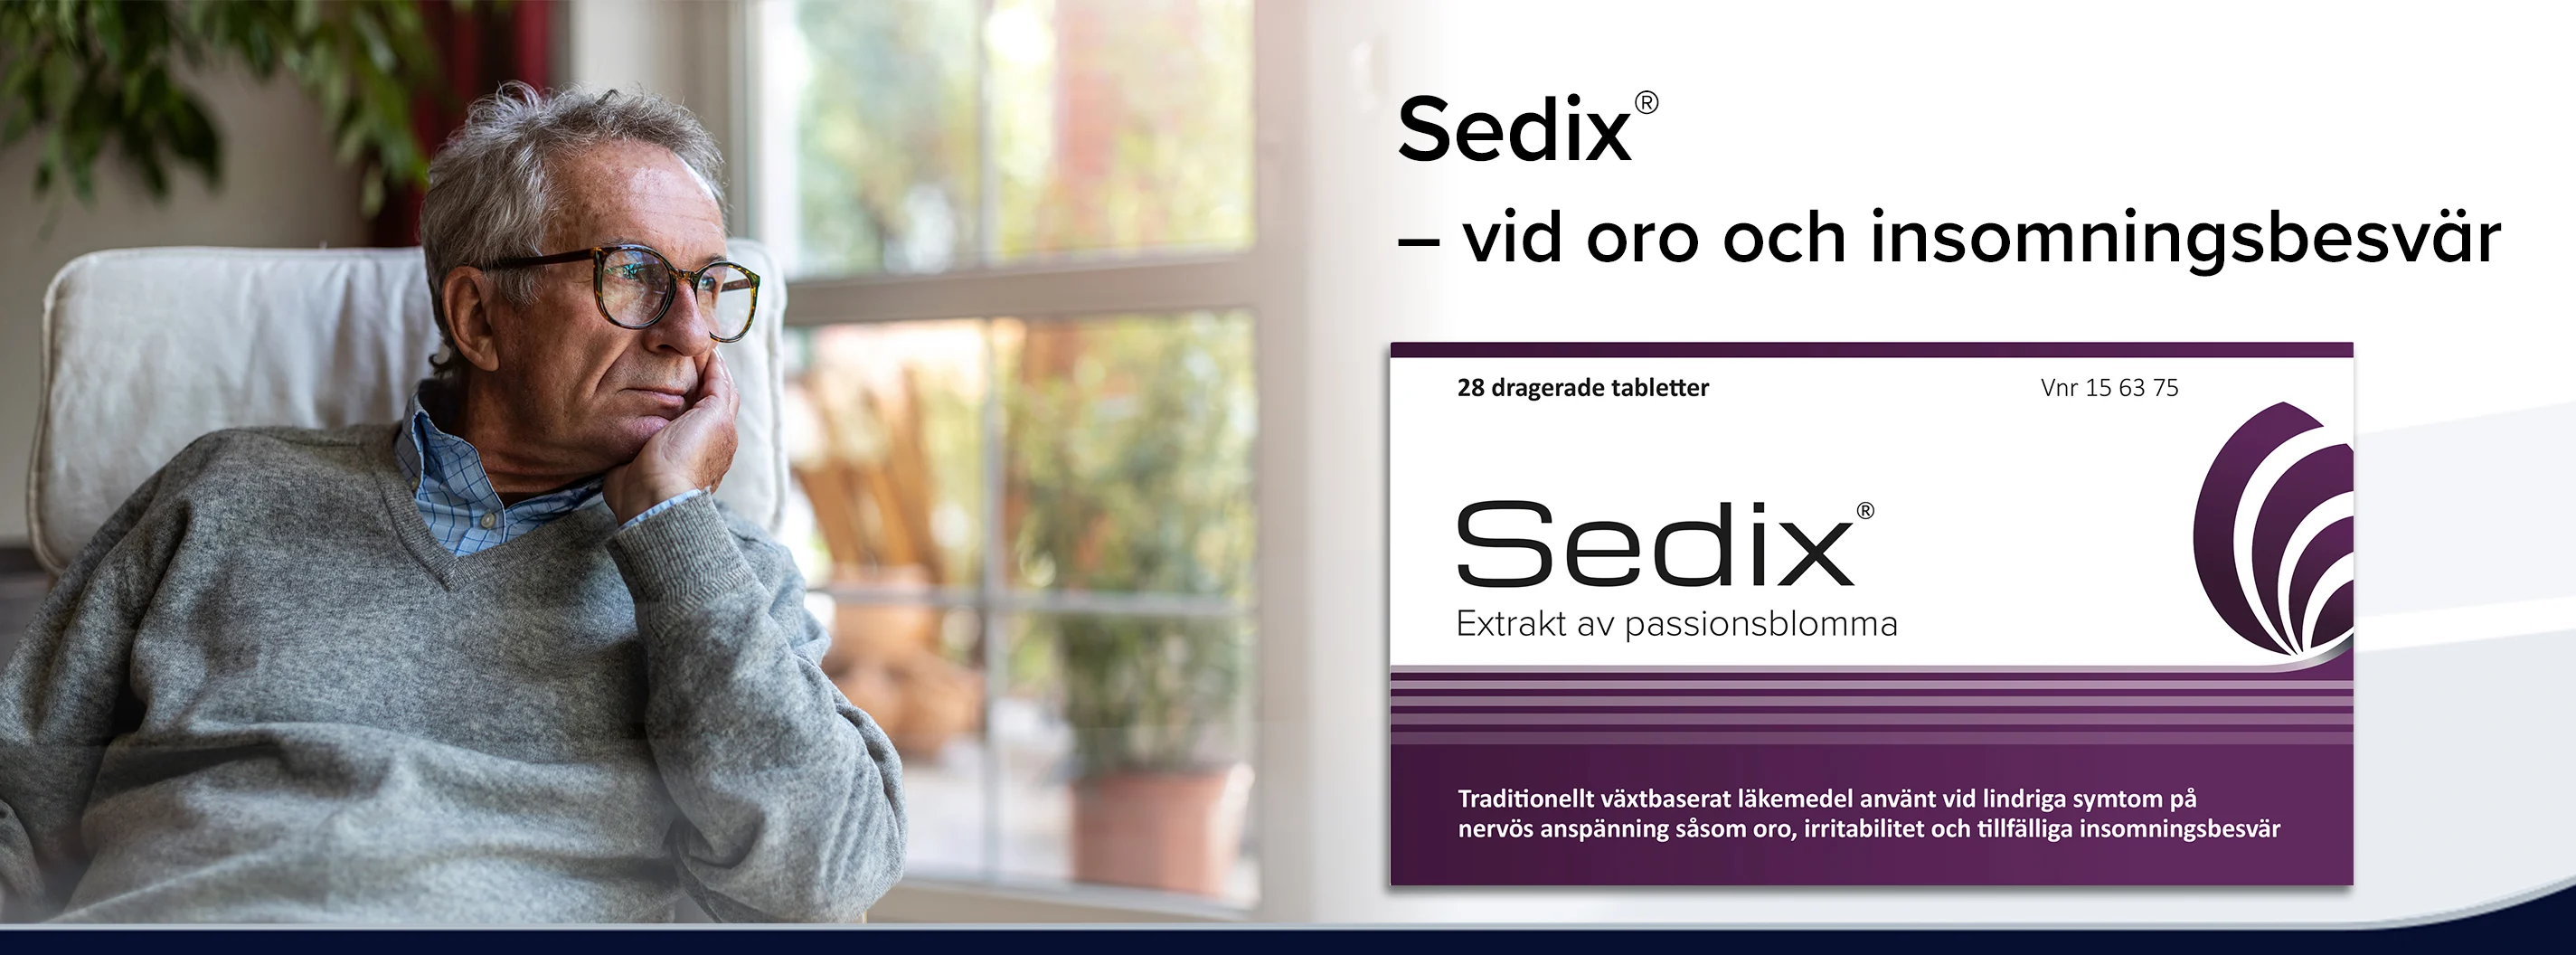 Sedix